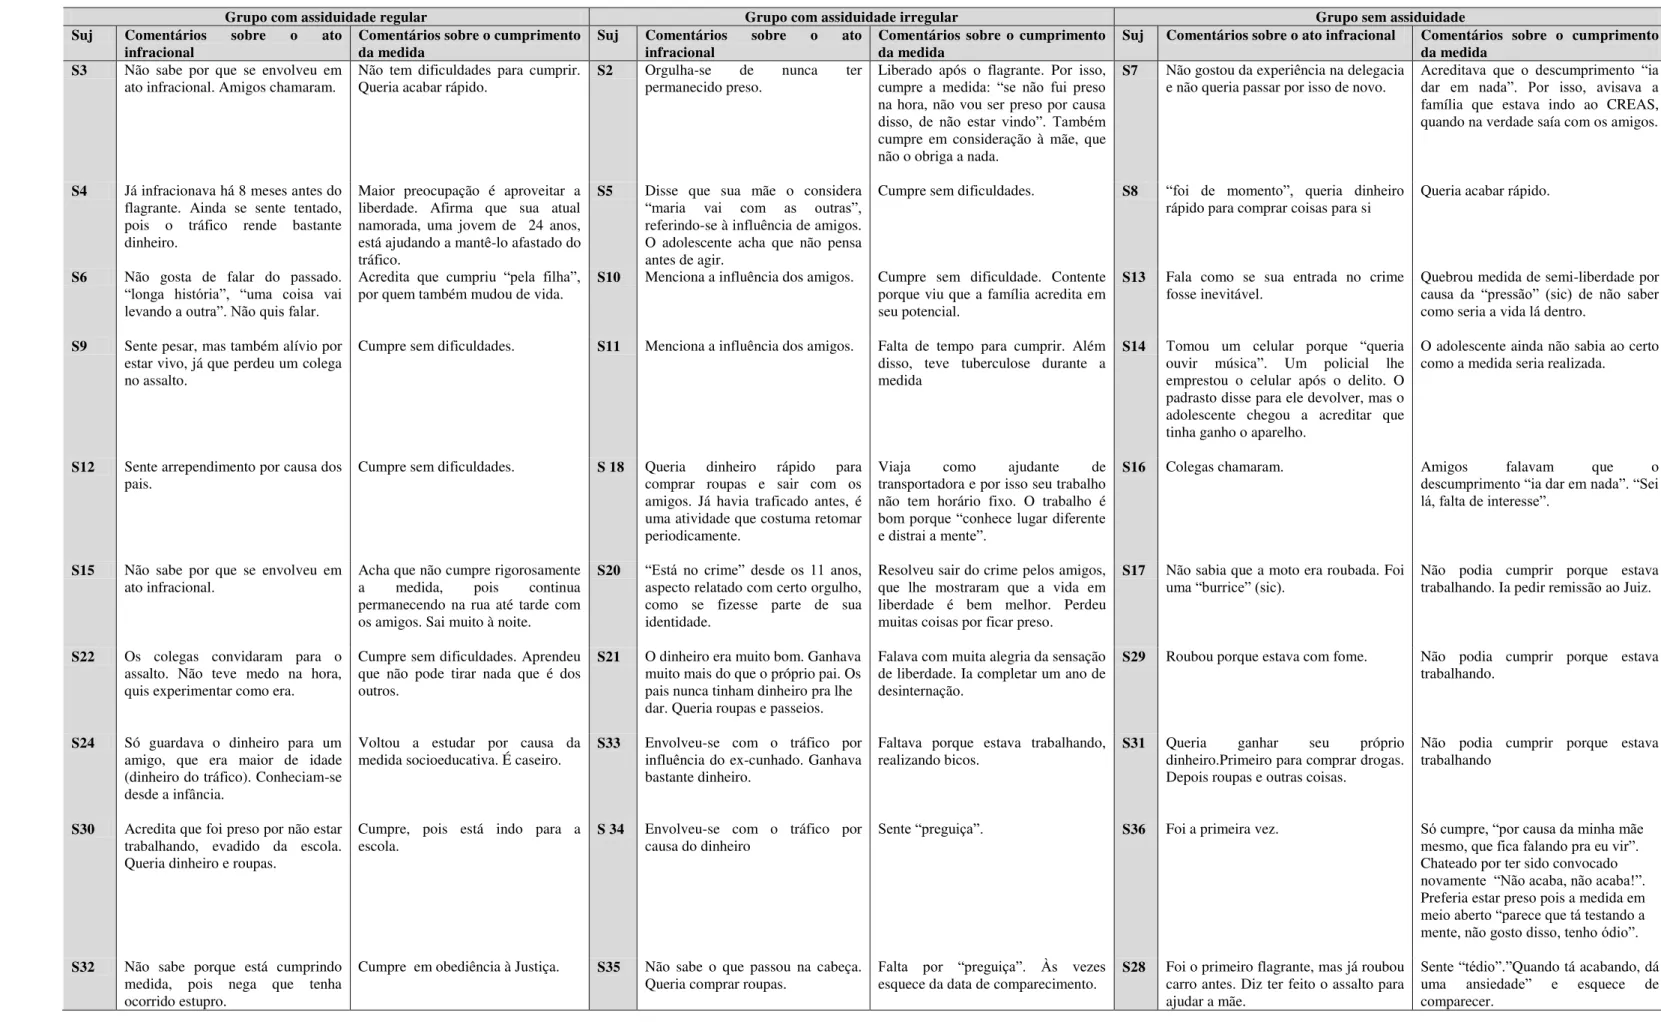 Tabela 15 - Dados obtidos nas entrevistas sobre o ato infracional e cumprimento da medida socioeducativa 